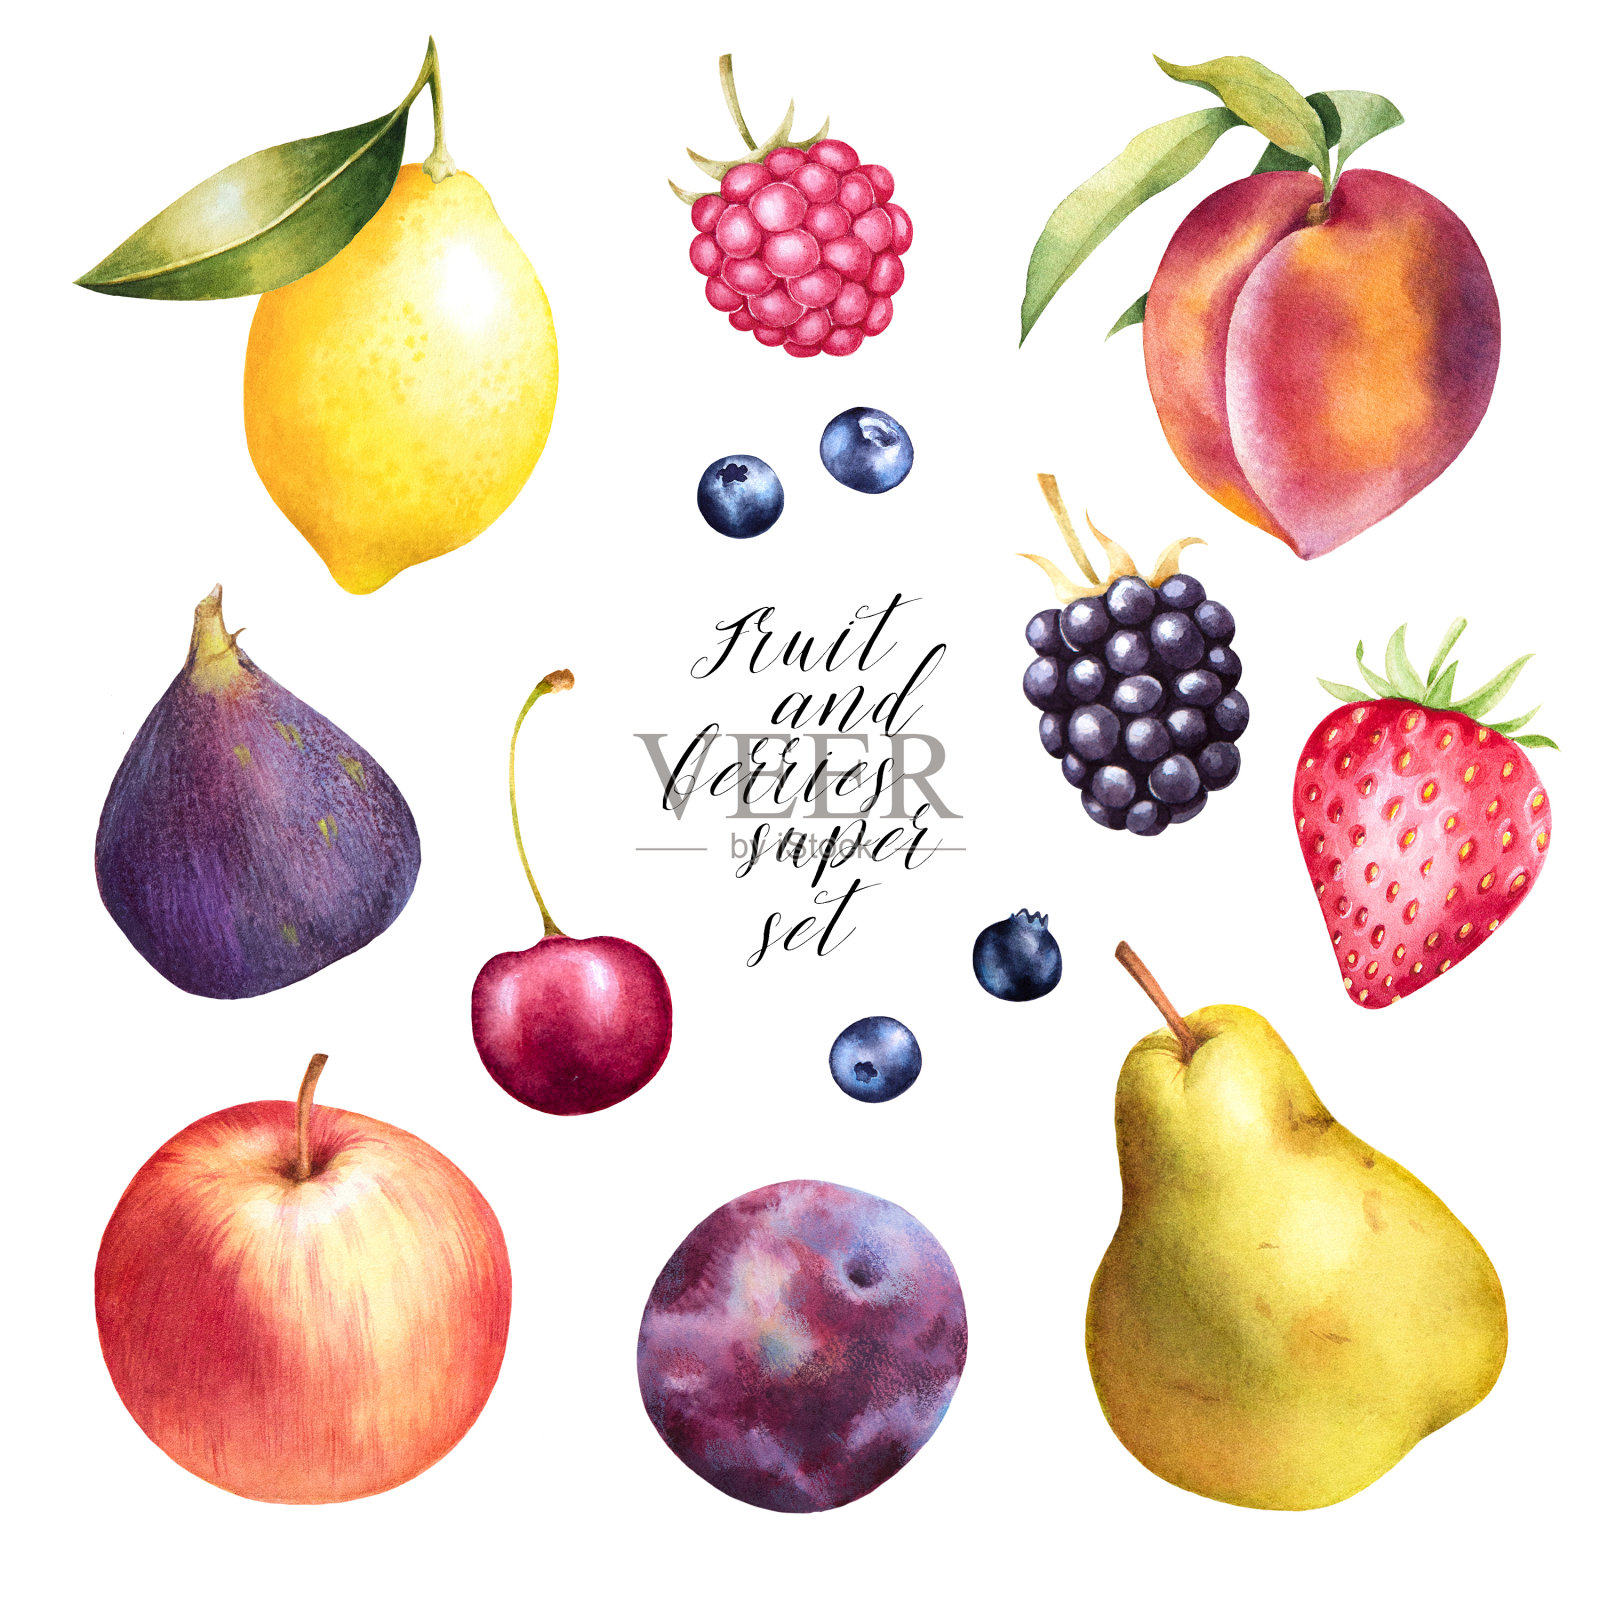 苹果、梨、桃、覆盆子、蓝莓、草莓、无花果、李子、樱桃手绘套装。插画图片素材